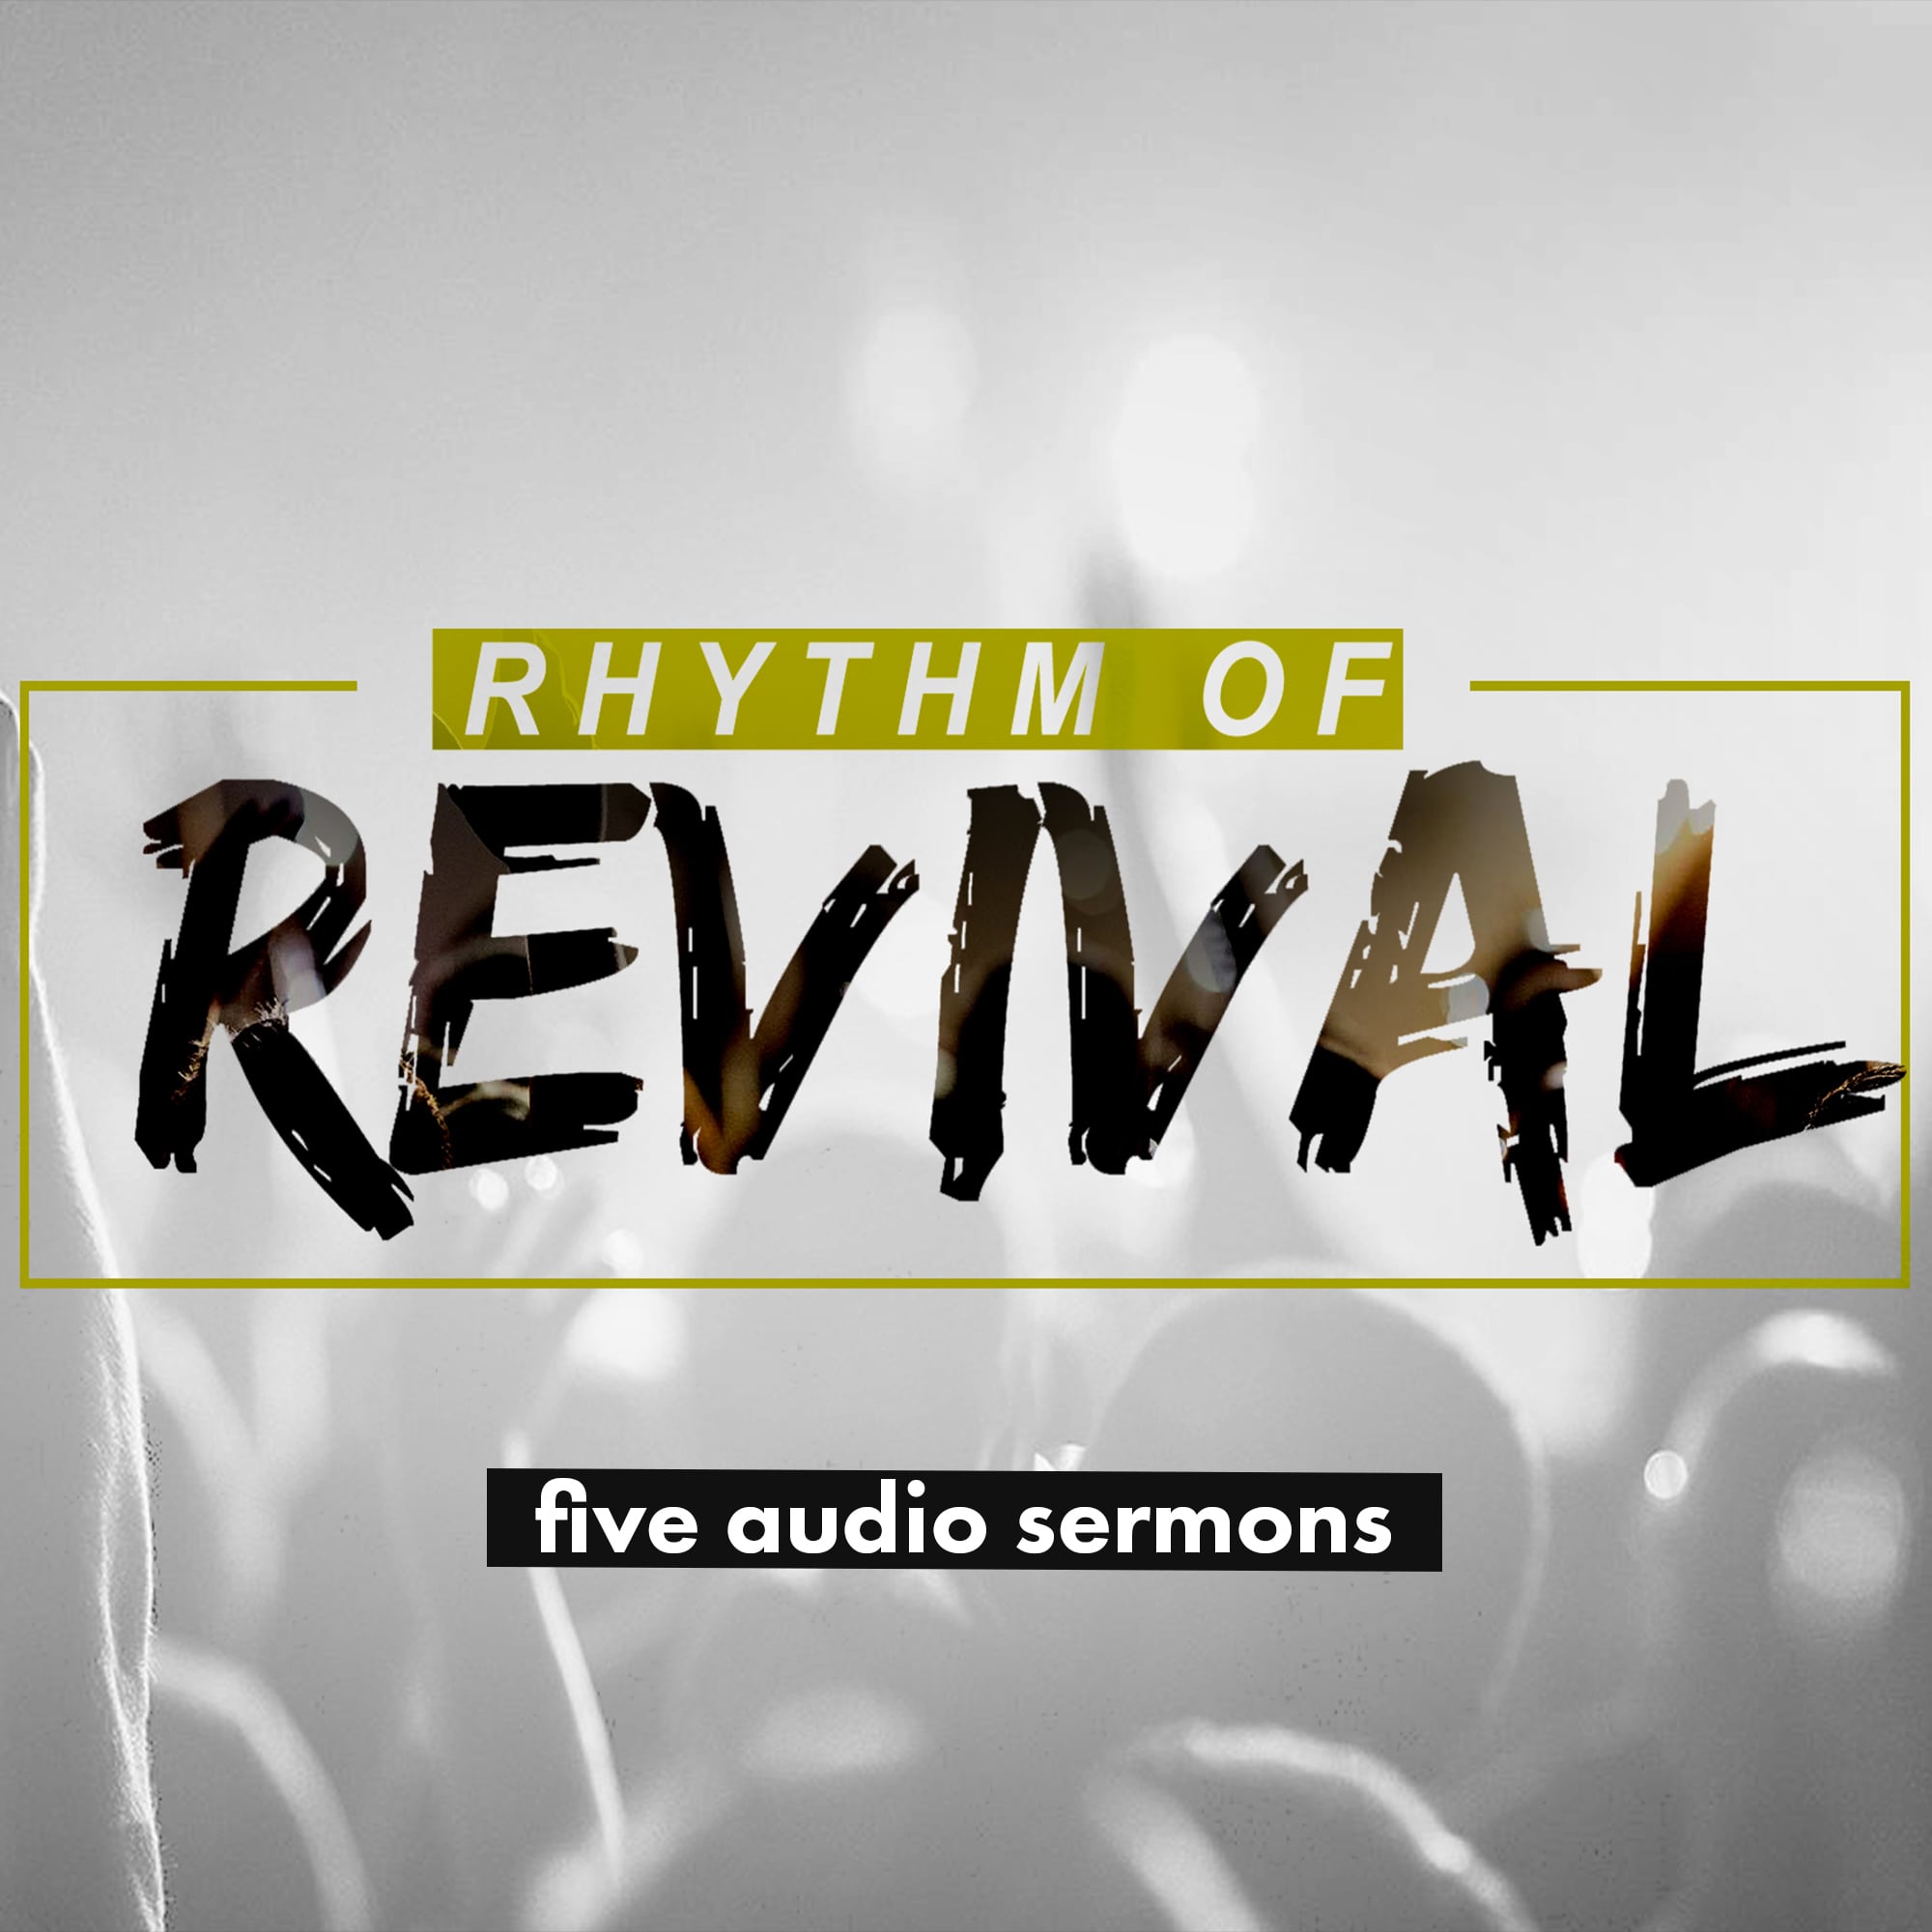 Series: Rhythm of Revival